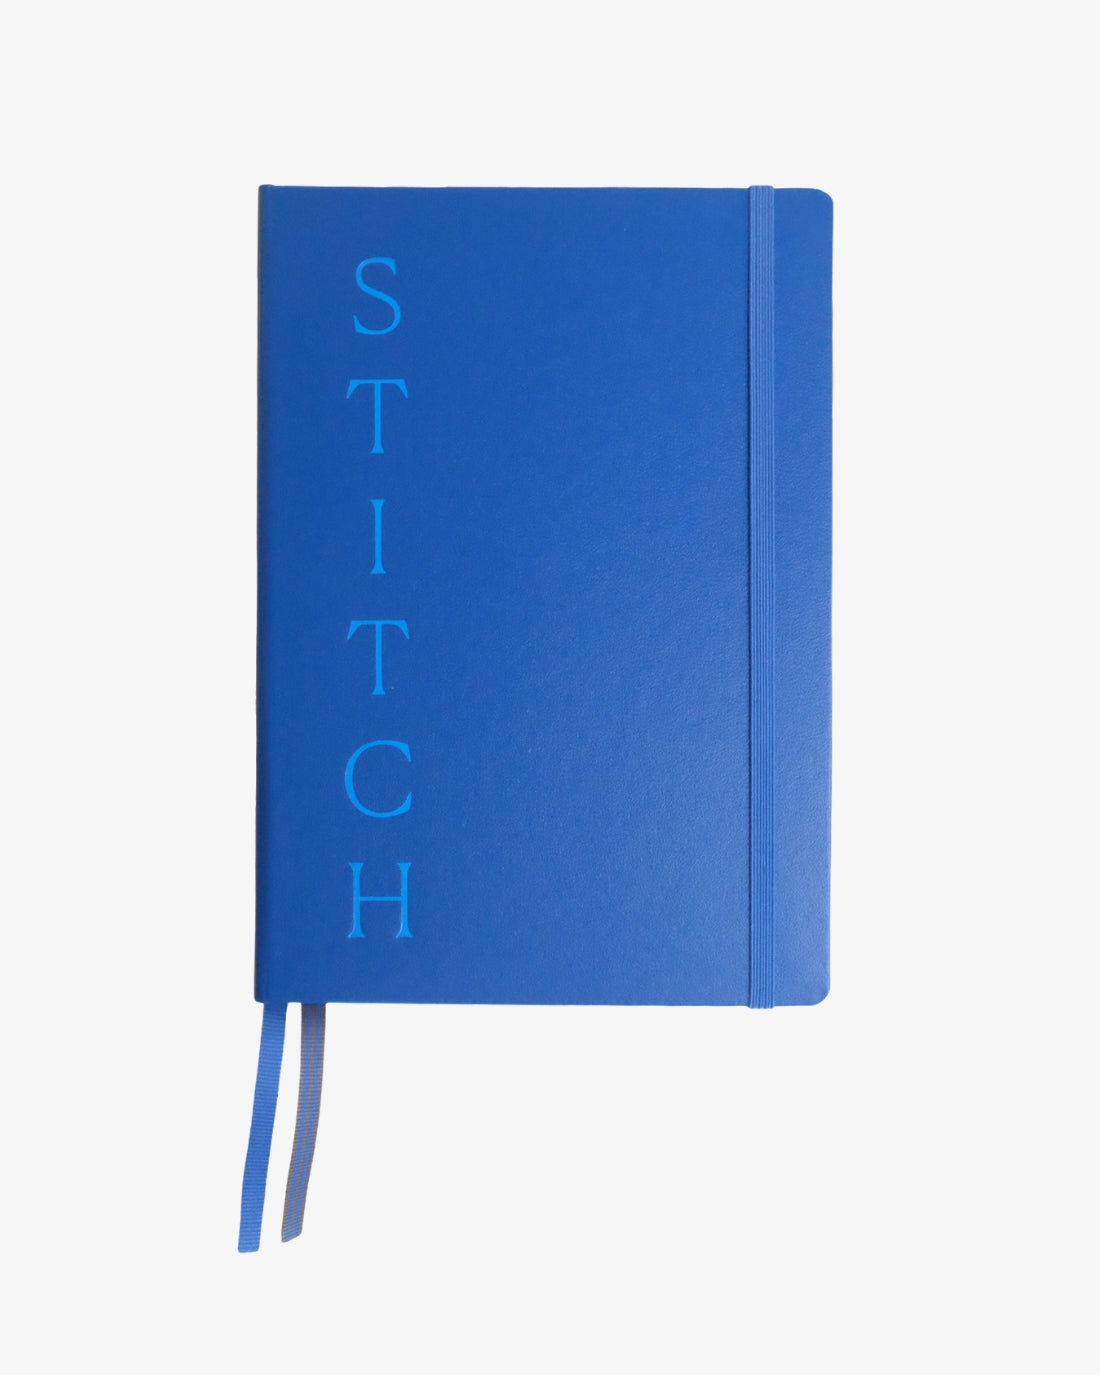 STITCH Notebook by Tatter